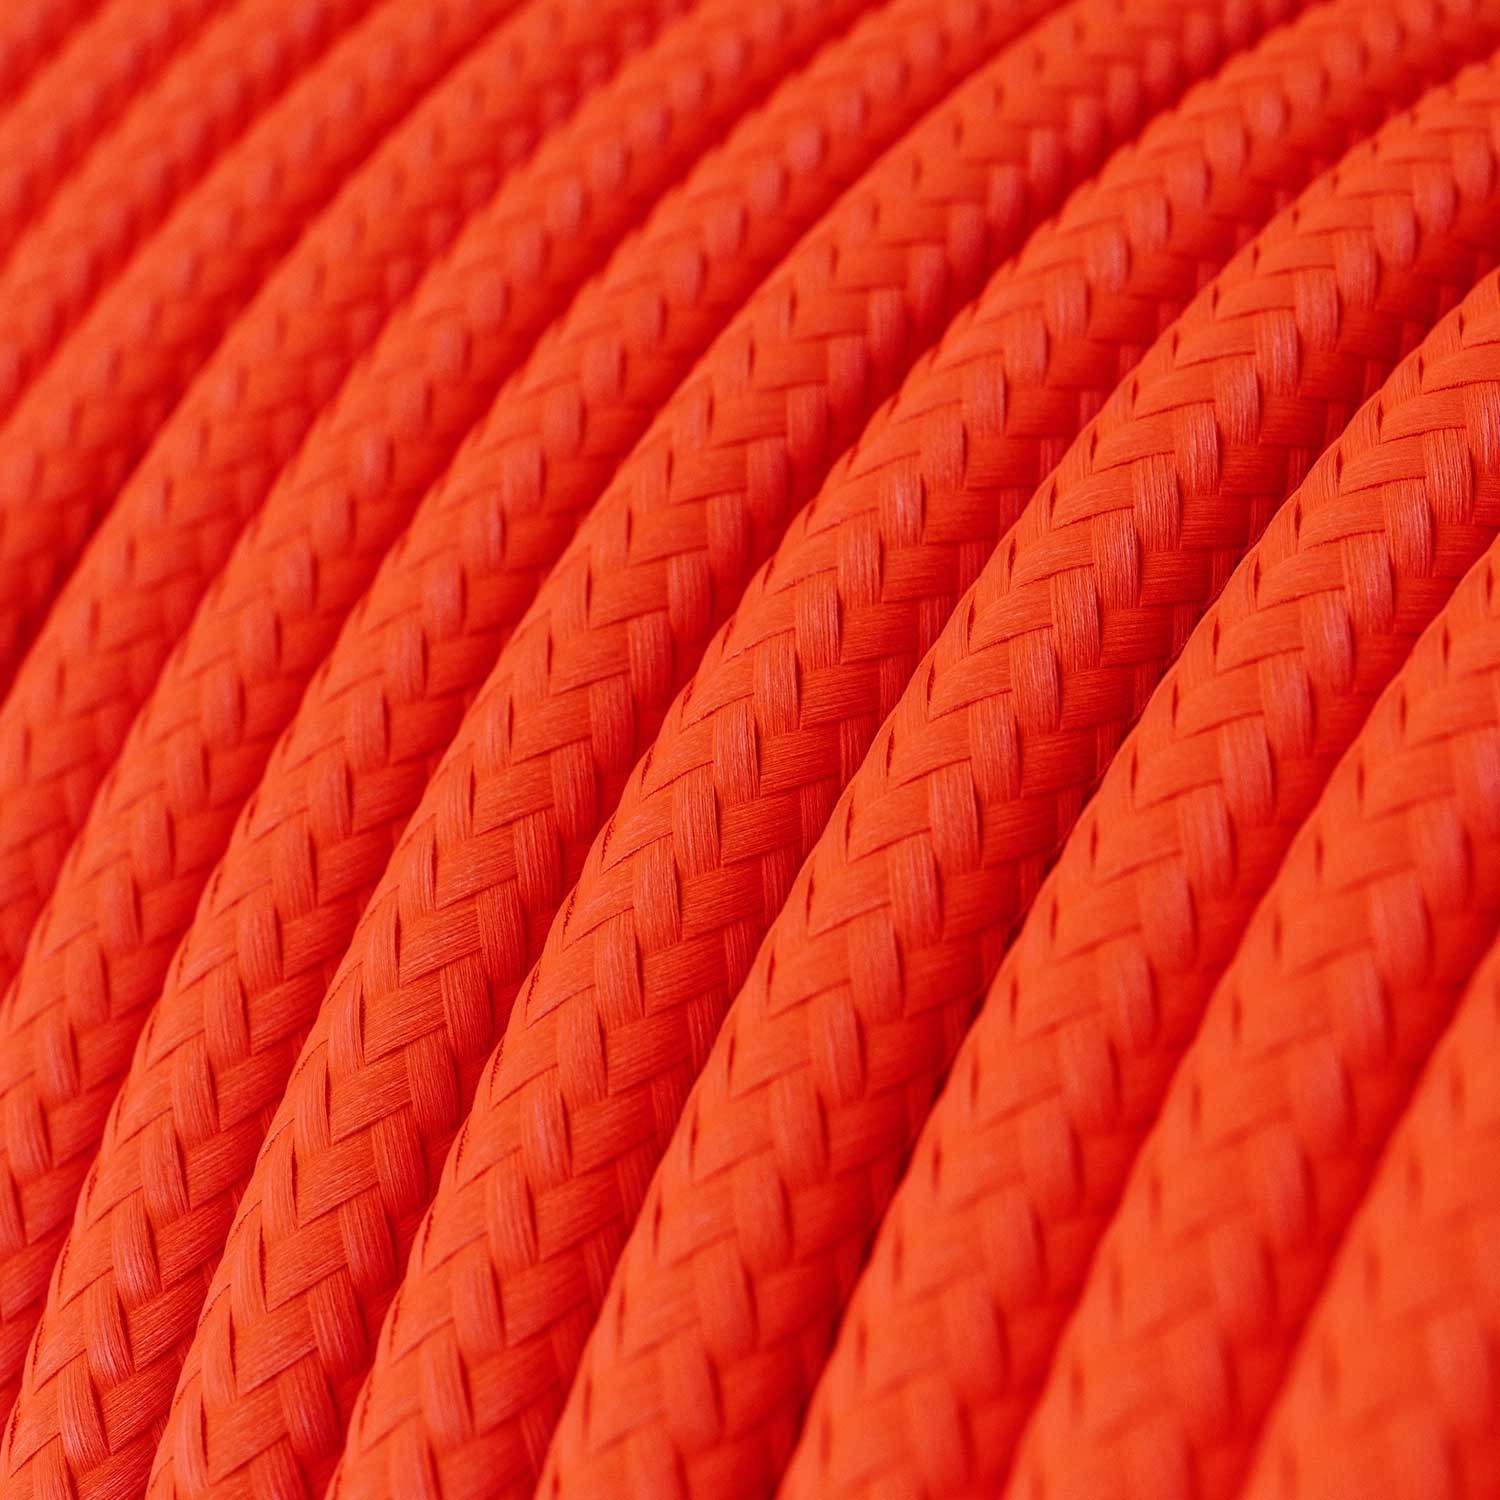 Cabo elétrico redondo com seda artificial aplicada cor de tecido sólida RF15 Laranja fluorescente